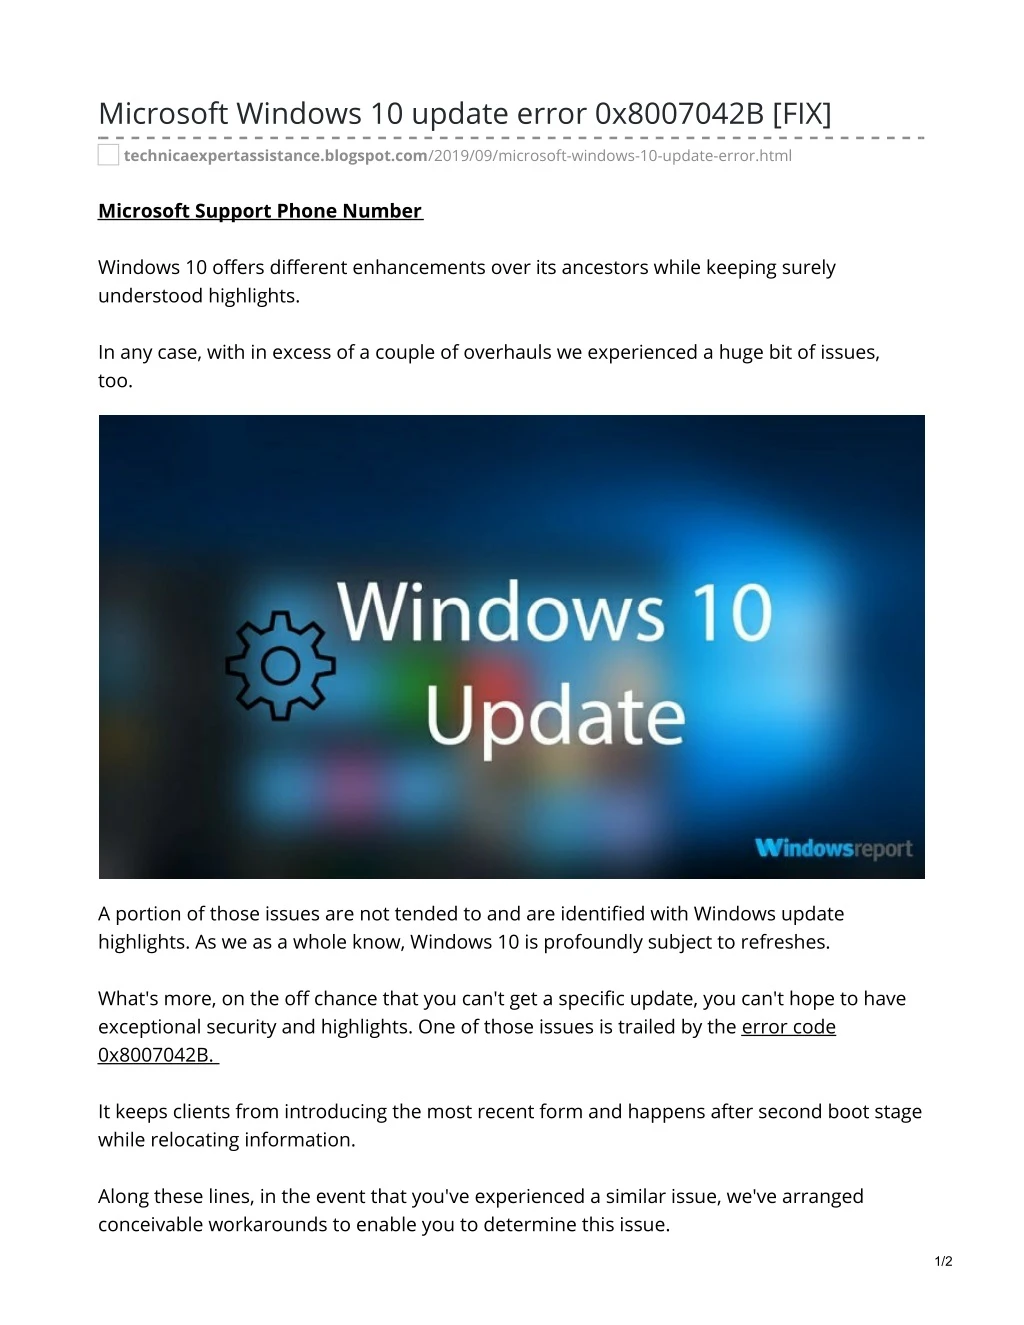 microsoft windows 10 update error 0x8007042b fix